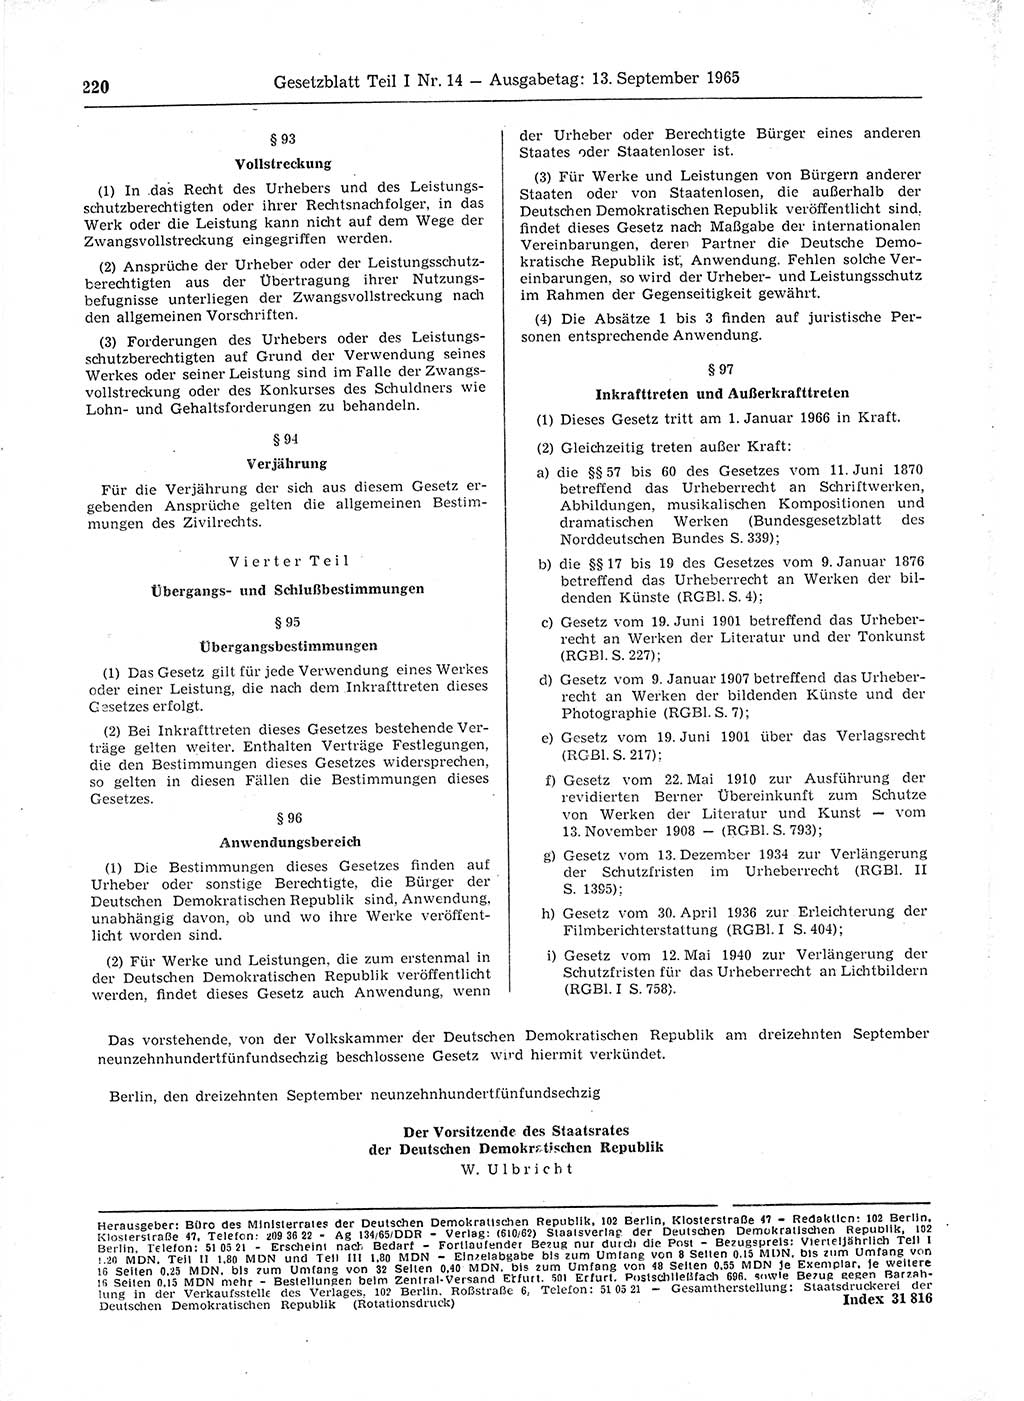 Gesetzblatt (GBl.) der Deutschen Demokratischen Republik (DDR) Teil Ⅰ 1965, Seite 220 (GBl. DDR Ⅰ 1965, S. 220)